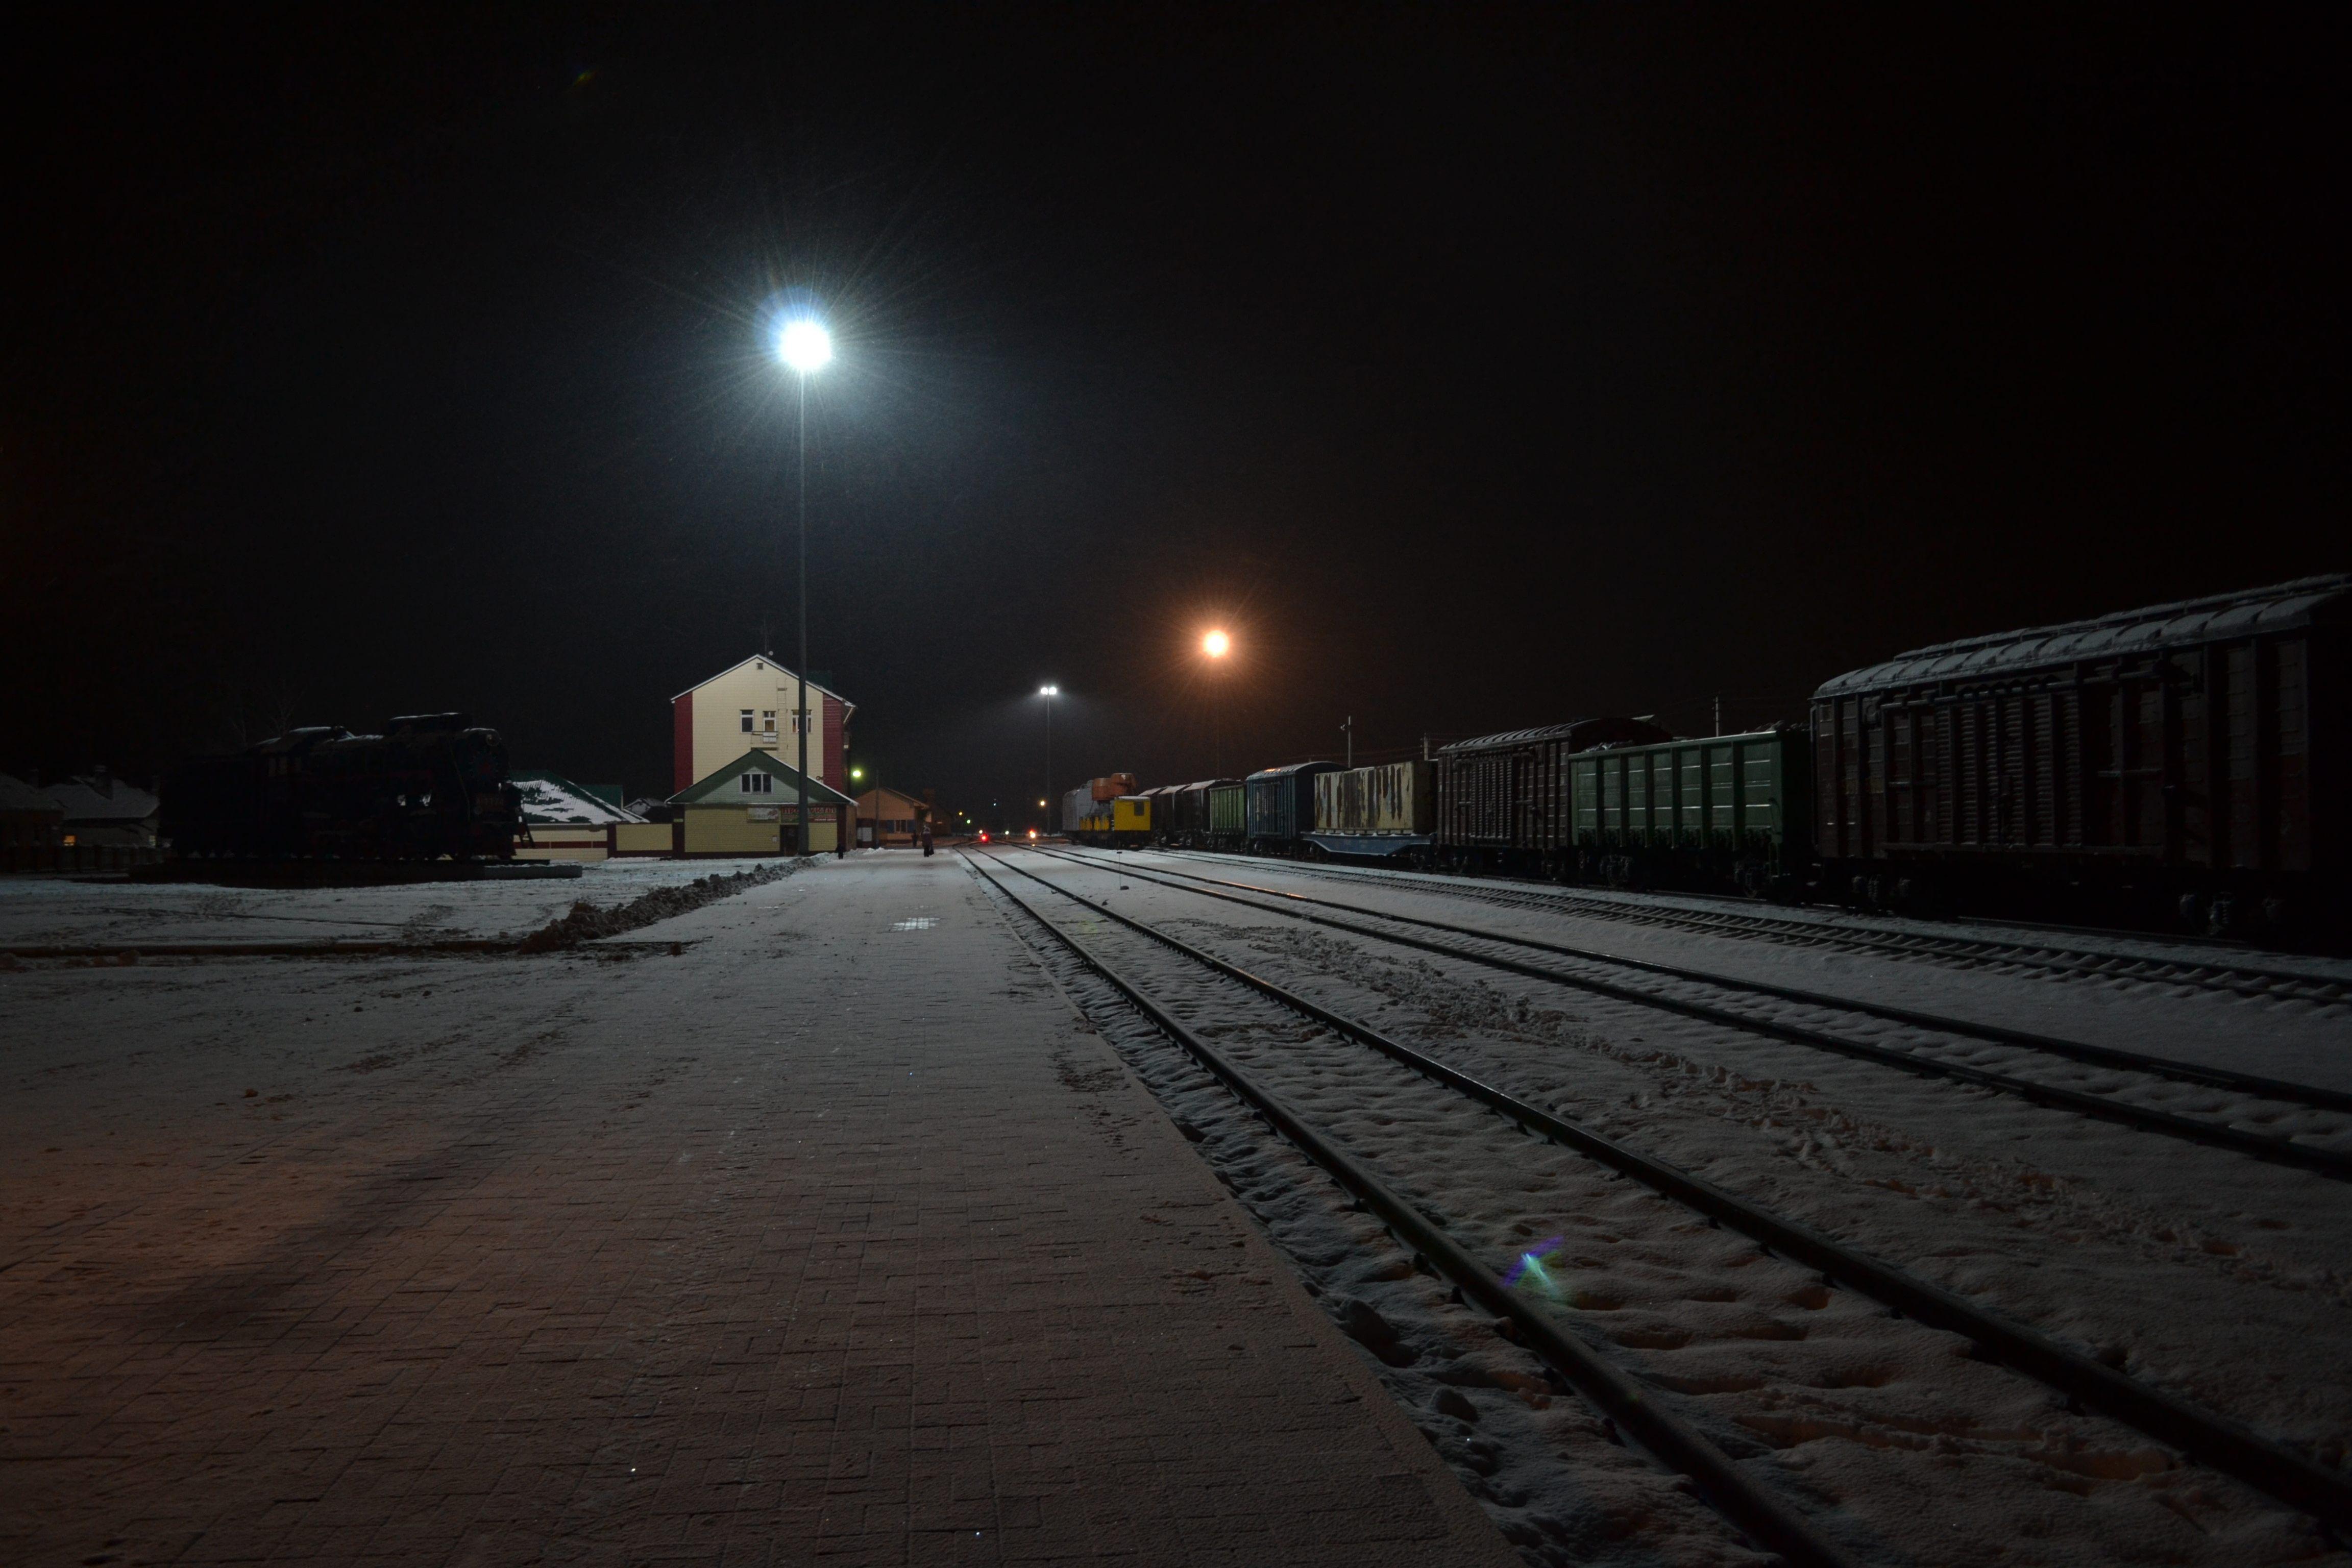 Включи станцию на ночь. Станция Няндома вокзал зимой. Ночной вокзал. Ночной поезд. Поезд ночью зимой.